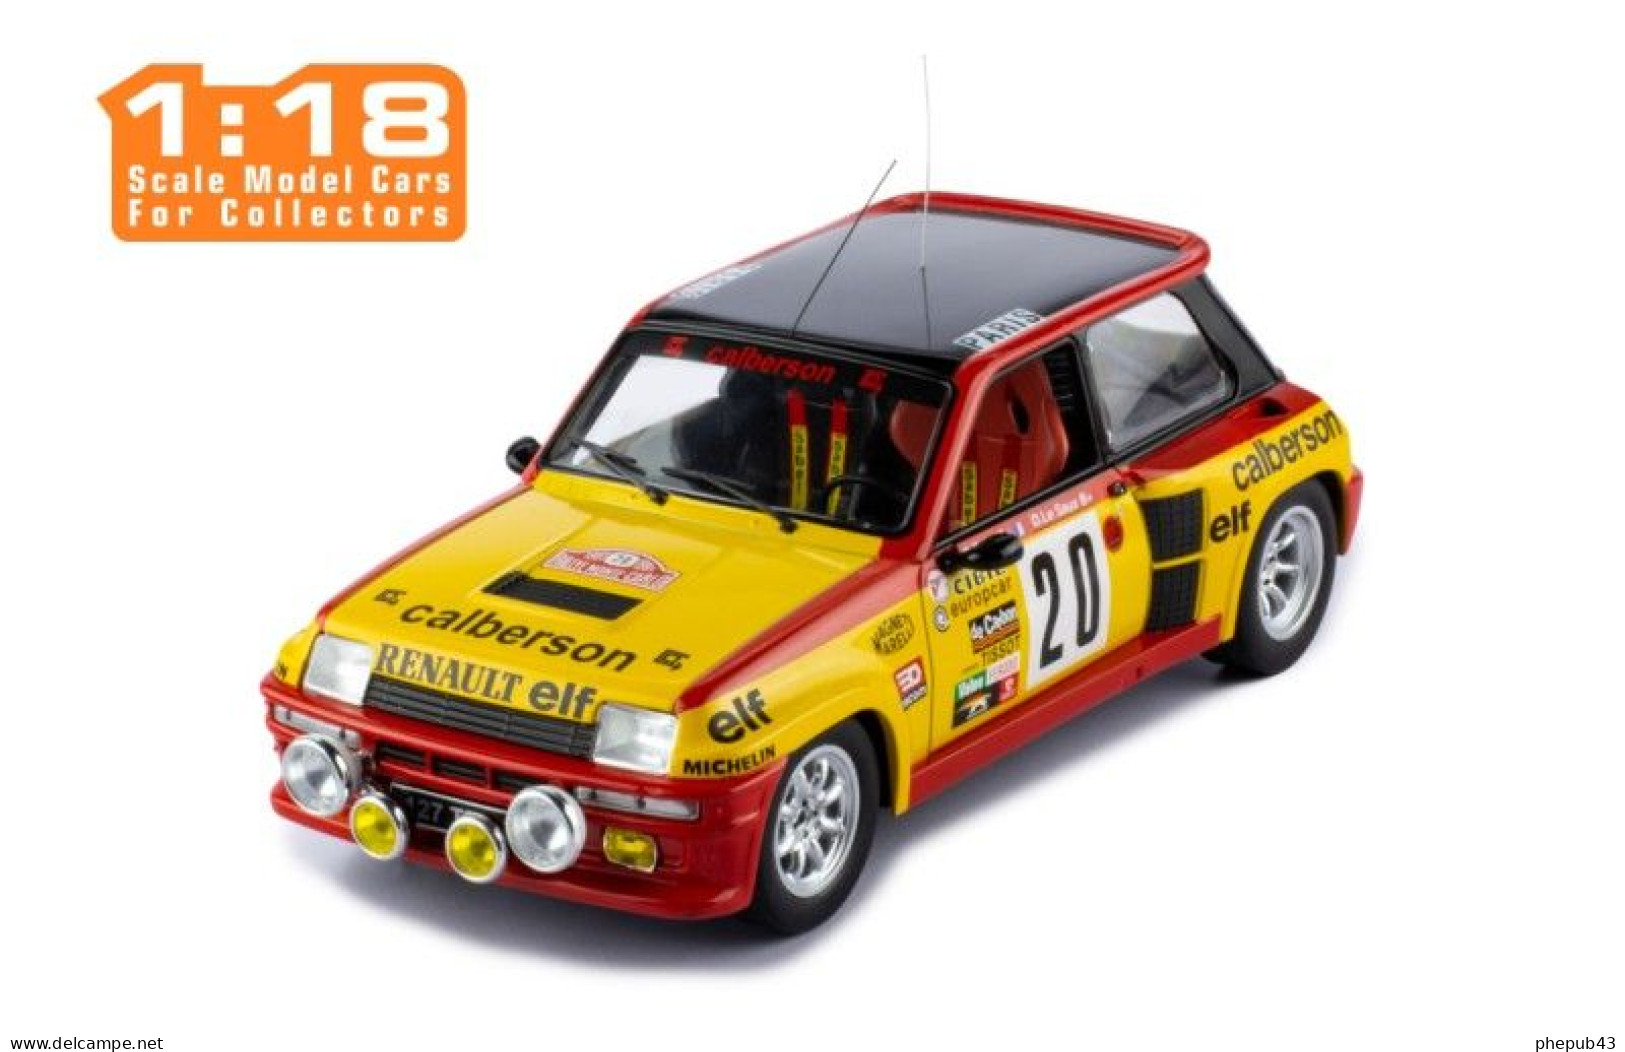 Renault 5 Turbo - Calberson - Monte-Carlo 1981 #20 - Bruno Saby/D. Le Saux - Ixo (1:18) - Ixo